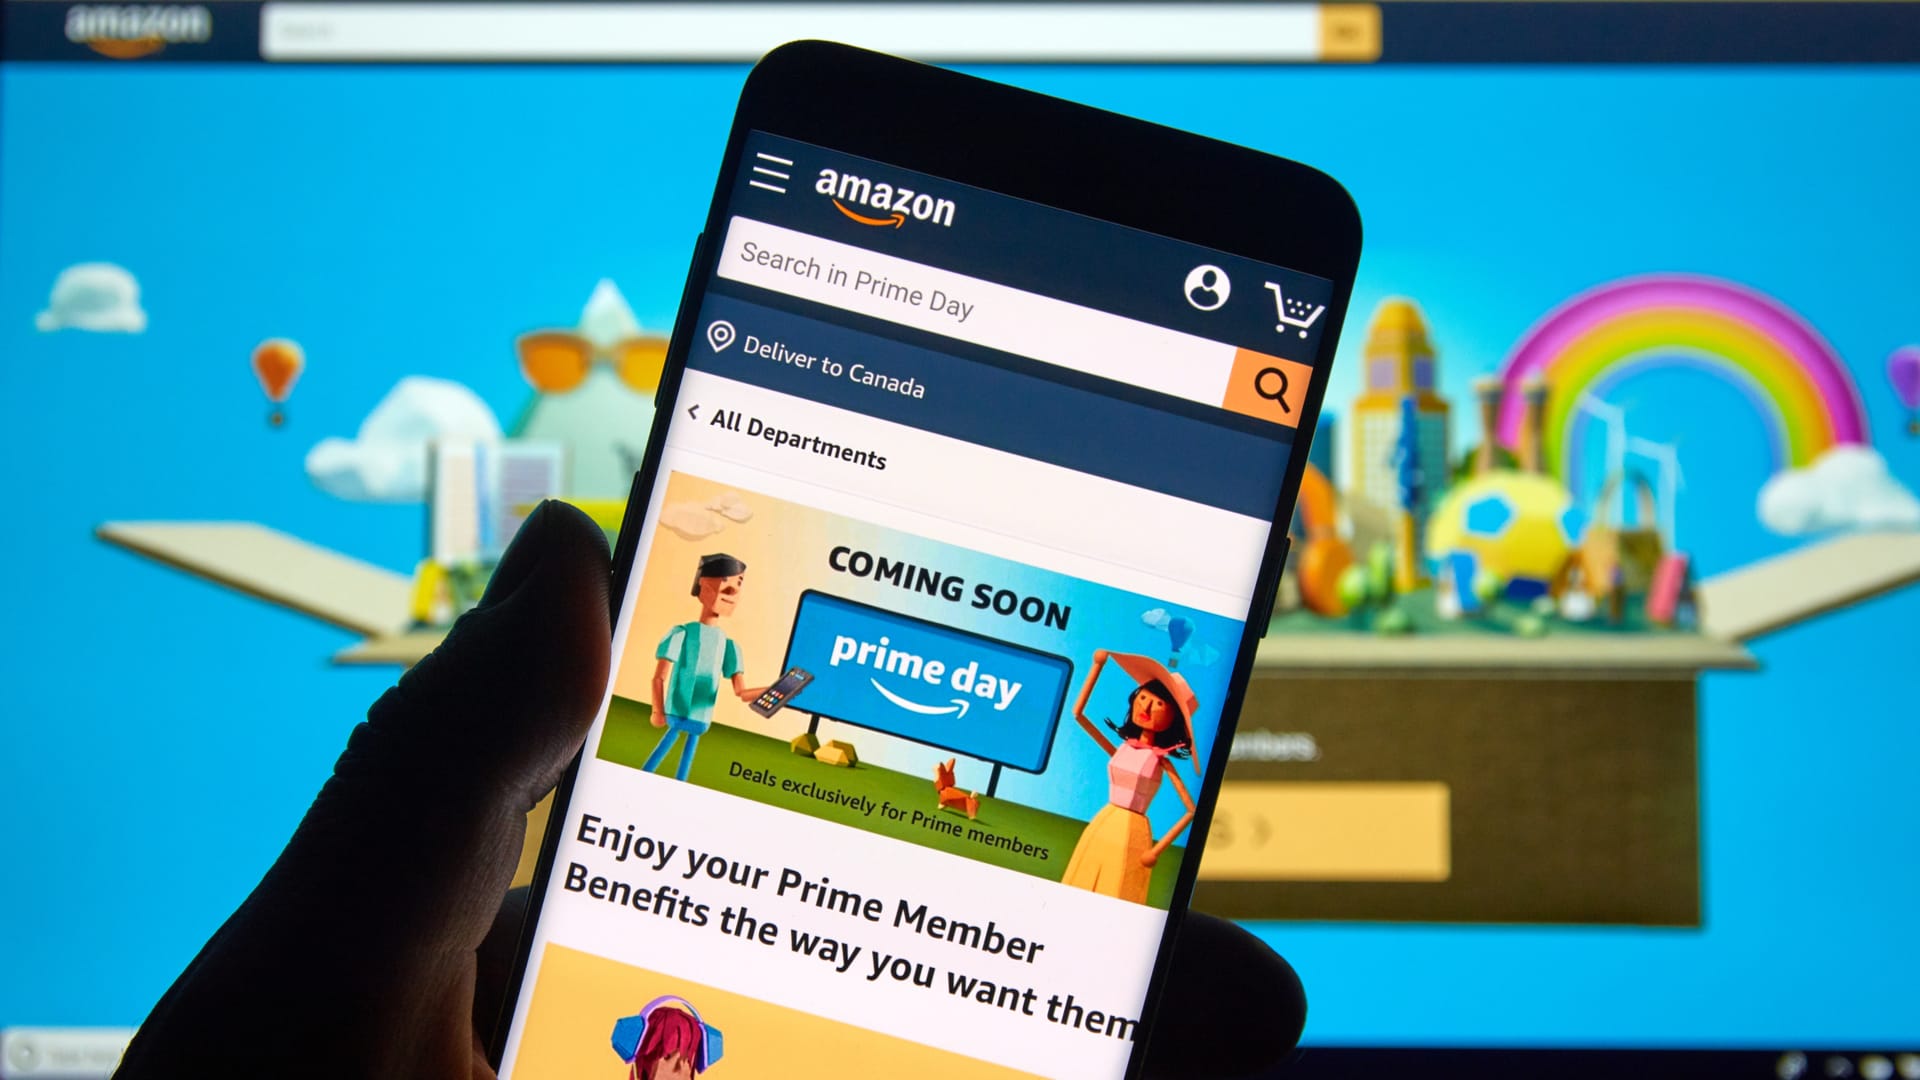 Pembeli Amazon Prime Day siap untuk berbelanja meskipun ada kesulitan ekonomi